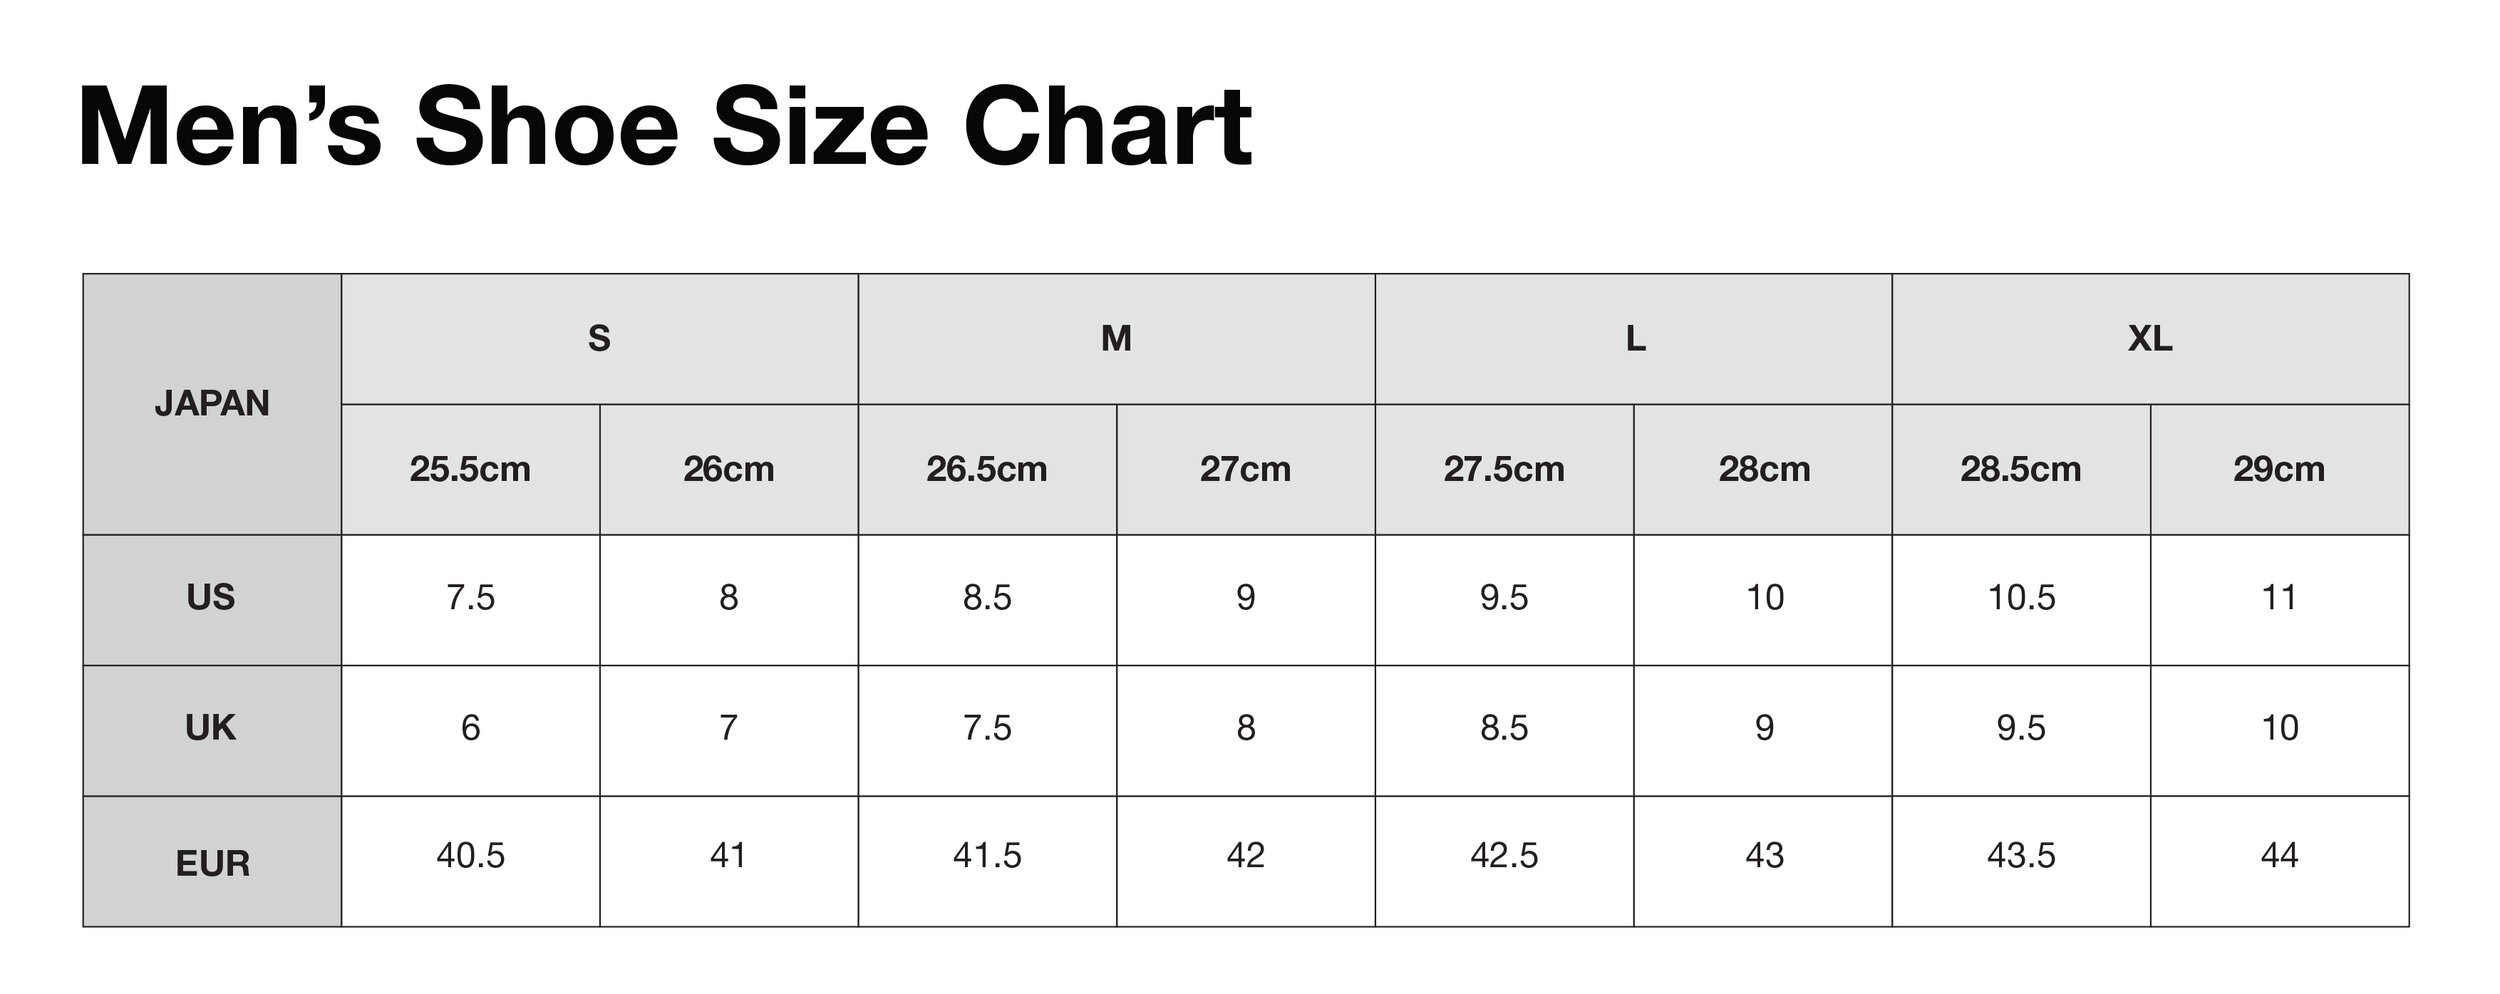 shoe size comparison chart australia